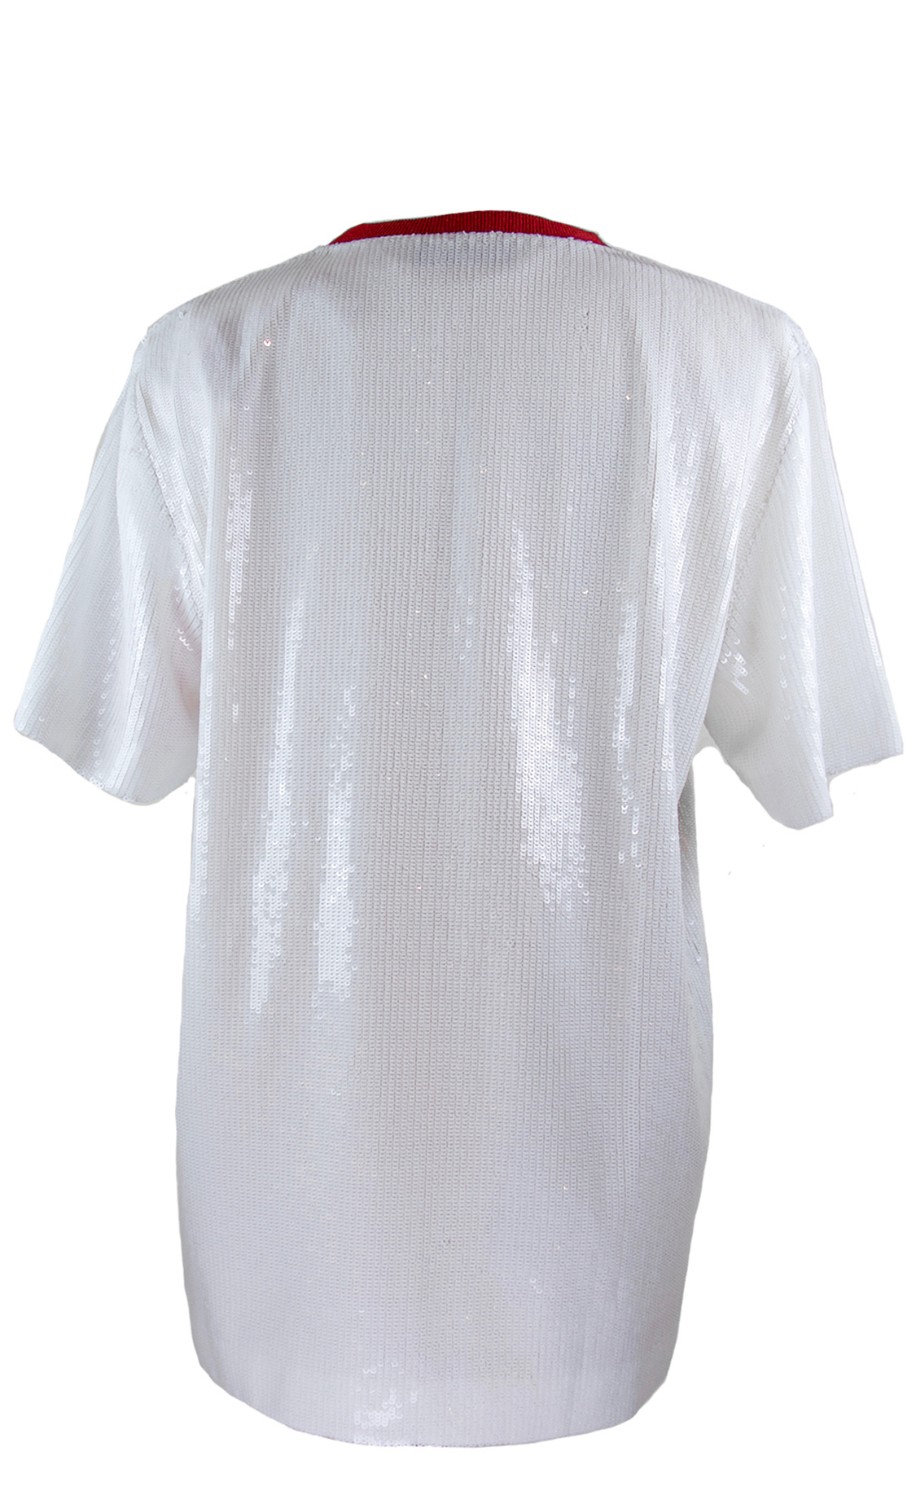 shop MSGM  T-shirts: T-shirt MSGM tutta di paillettes bianche, girocollo, manica corta, modello oversize, logo rosso, colletto rosso, sottoveste color cammello.

Composizione: 100% poliestere number 840